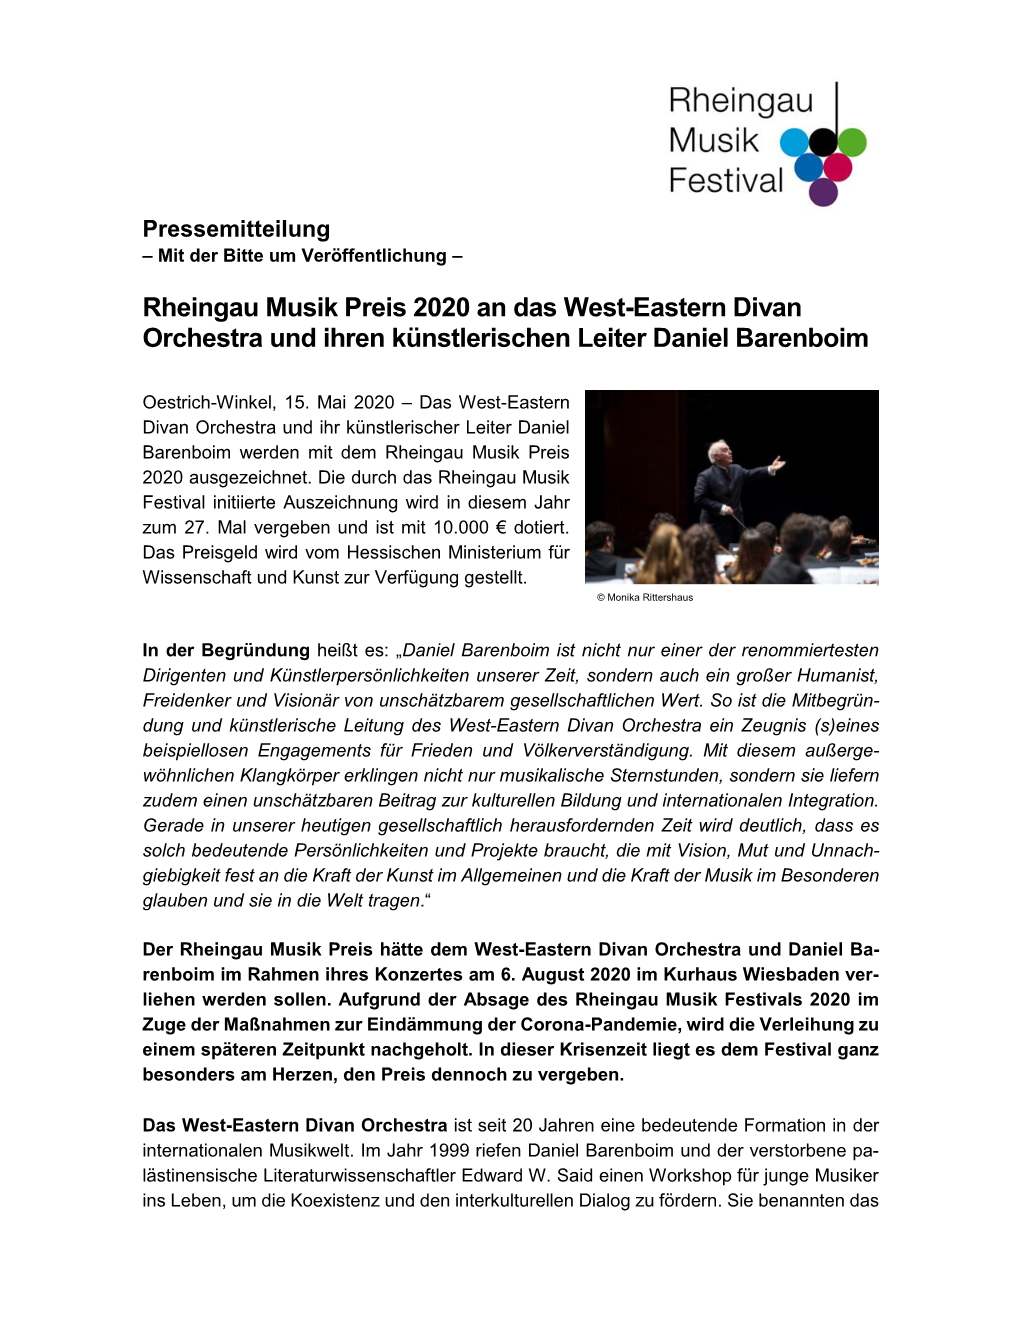 Rheingau Musik Preis 2020 an Das West-Eastern Divan Orchestra Und Ihren Künstlerischen Leiter Daniel Barenboim